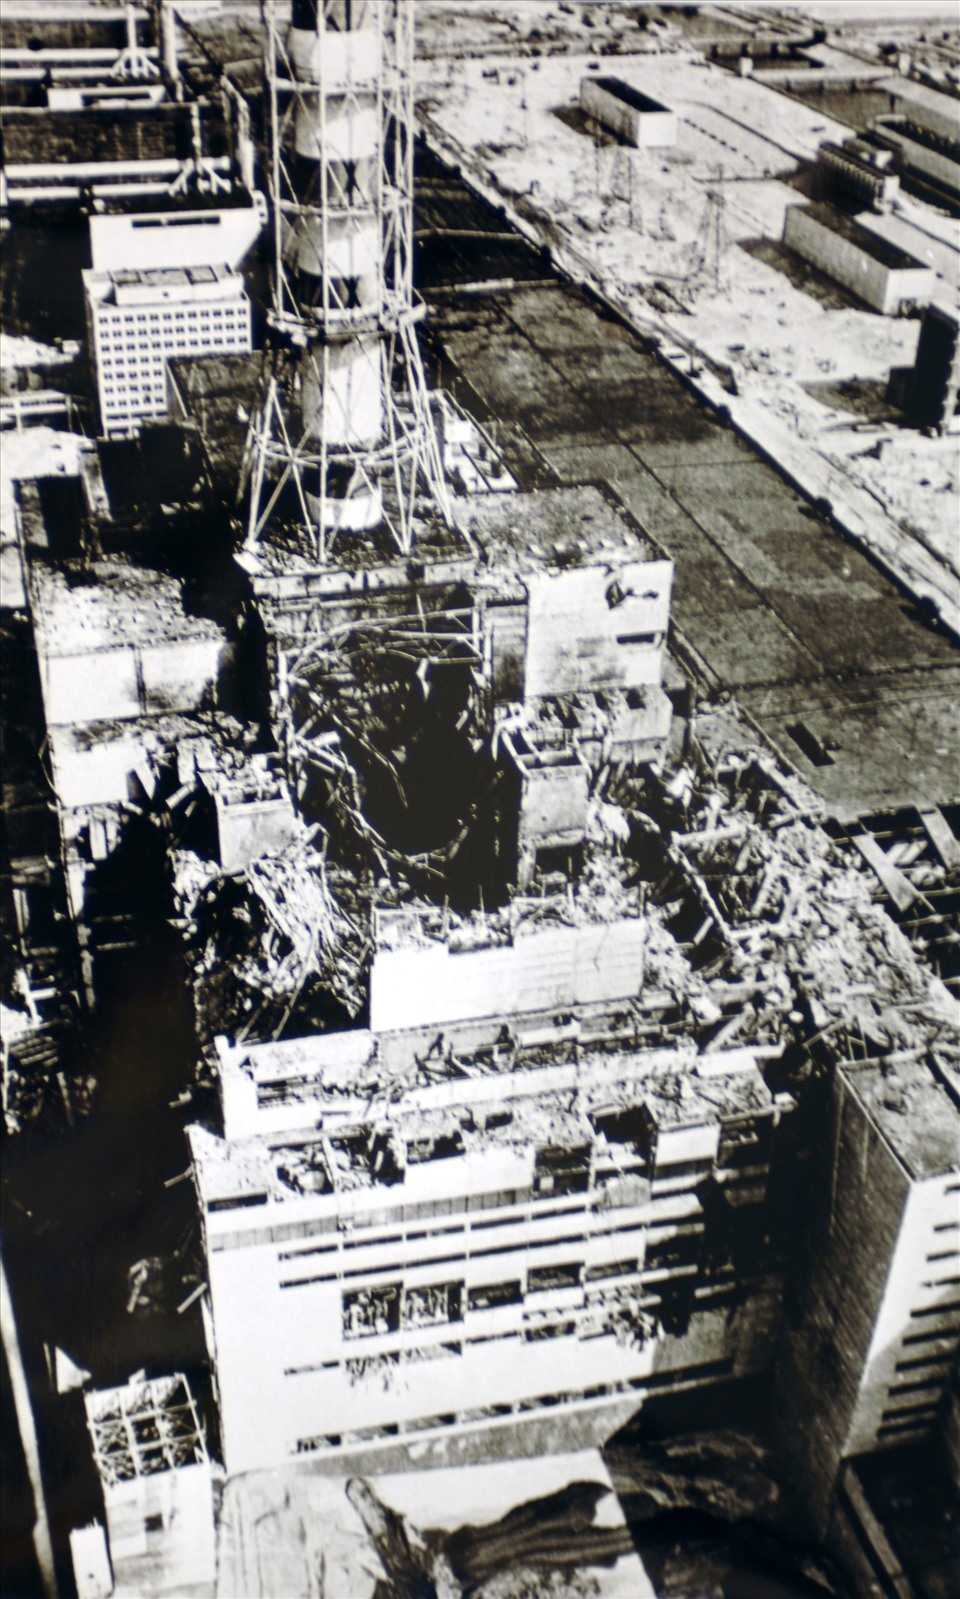 Ngày 26.4.1986 đã xảy ra vụ tai nạn lớn nhất trong toàn bộ lịch sử ngành năng lượng hạt nhân thế giới tại nhà máy điện hạt nhân Chernobyl, Ukraina. Ảnh: Wiki